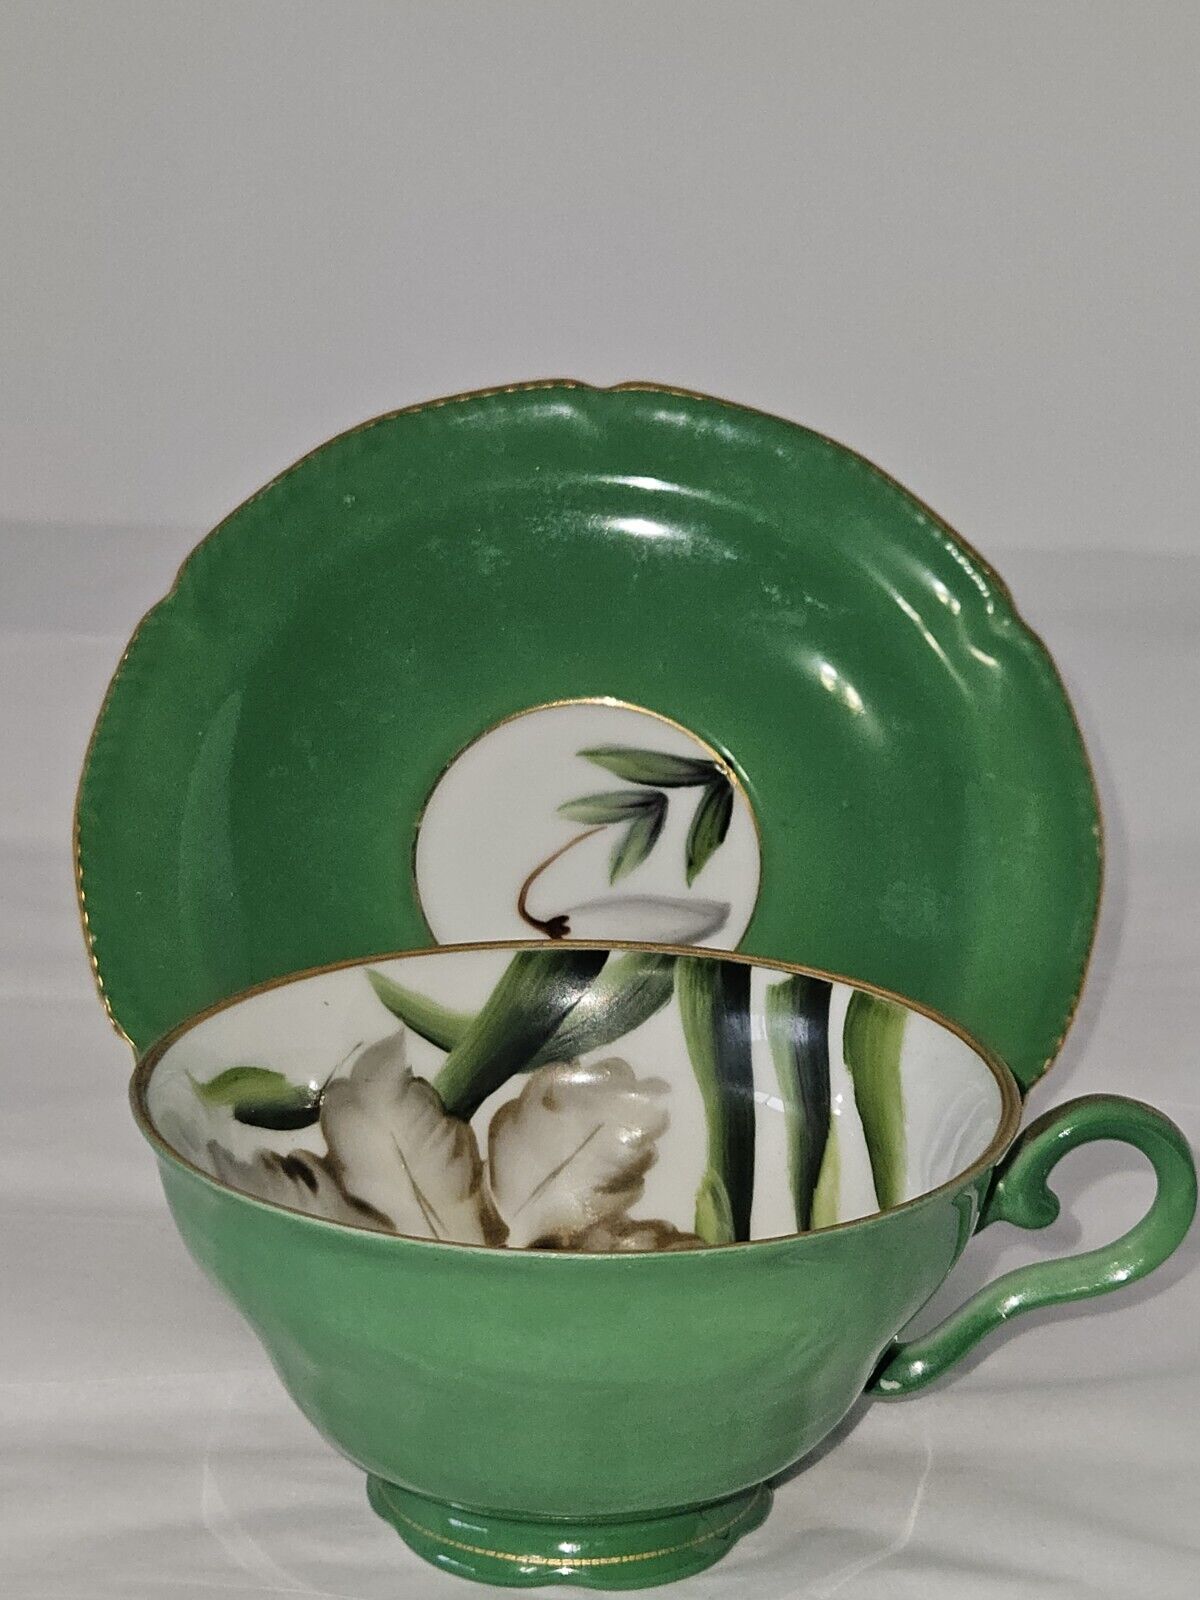 Vintage Wales China Tea Cup Saucer Set Green Floral Gold Gilt Japan ESTATE